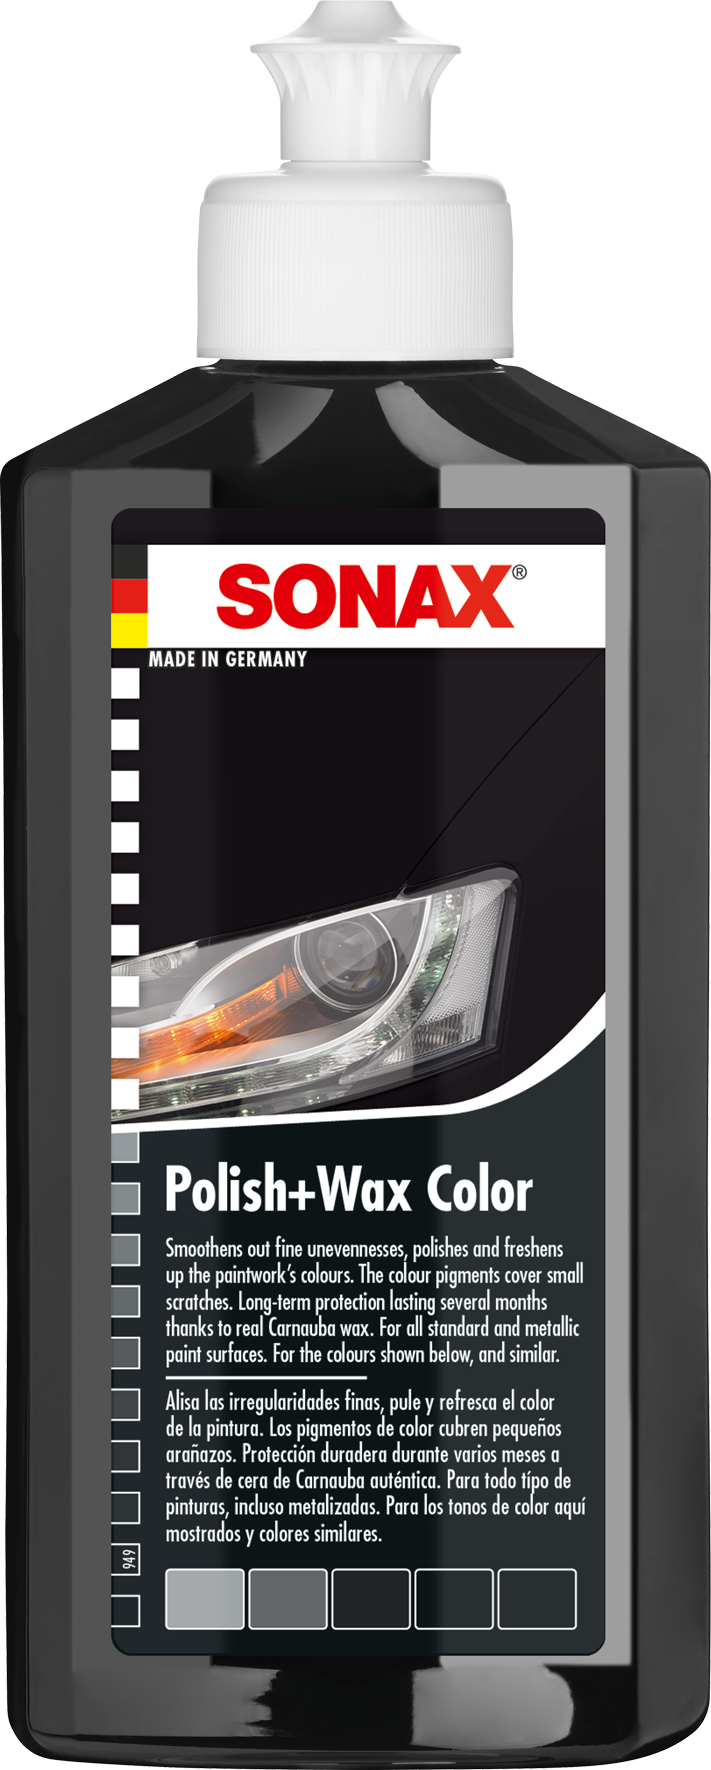 Polish & Wax Color Nano Pro Black- Làm Trong&Bảo Vệ Mặt Sơn Đen Nano Pro